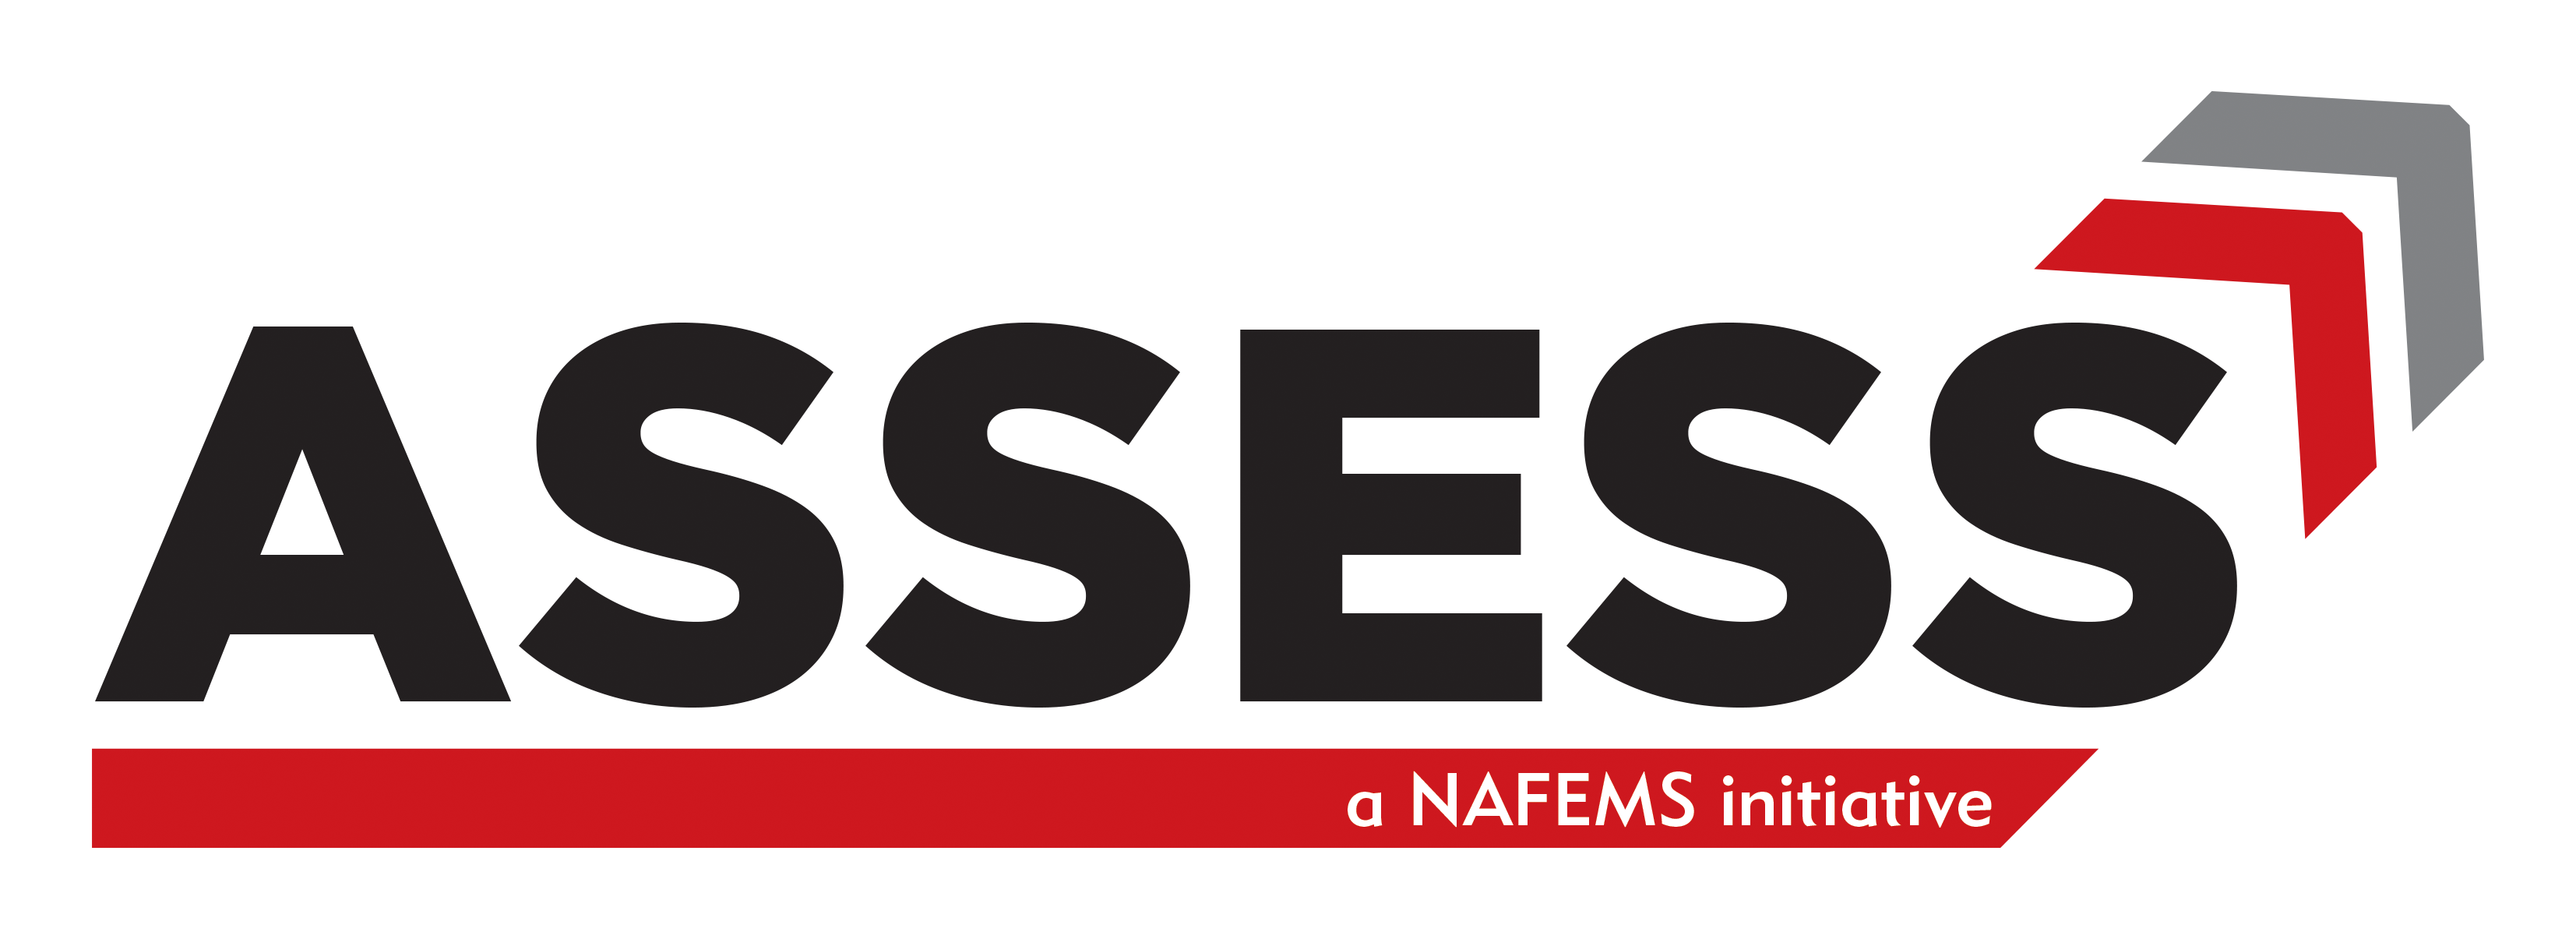 ASSESS - NAFEMS Initiative